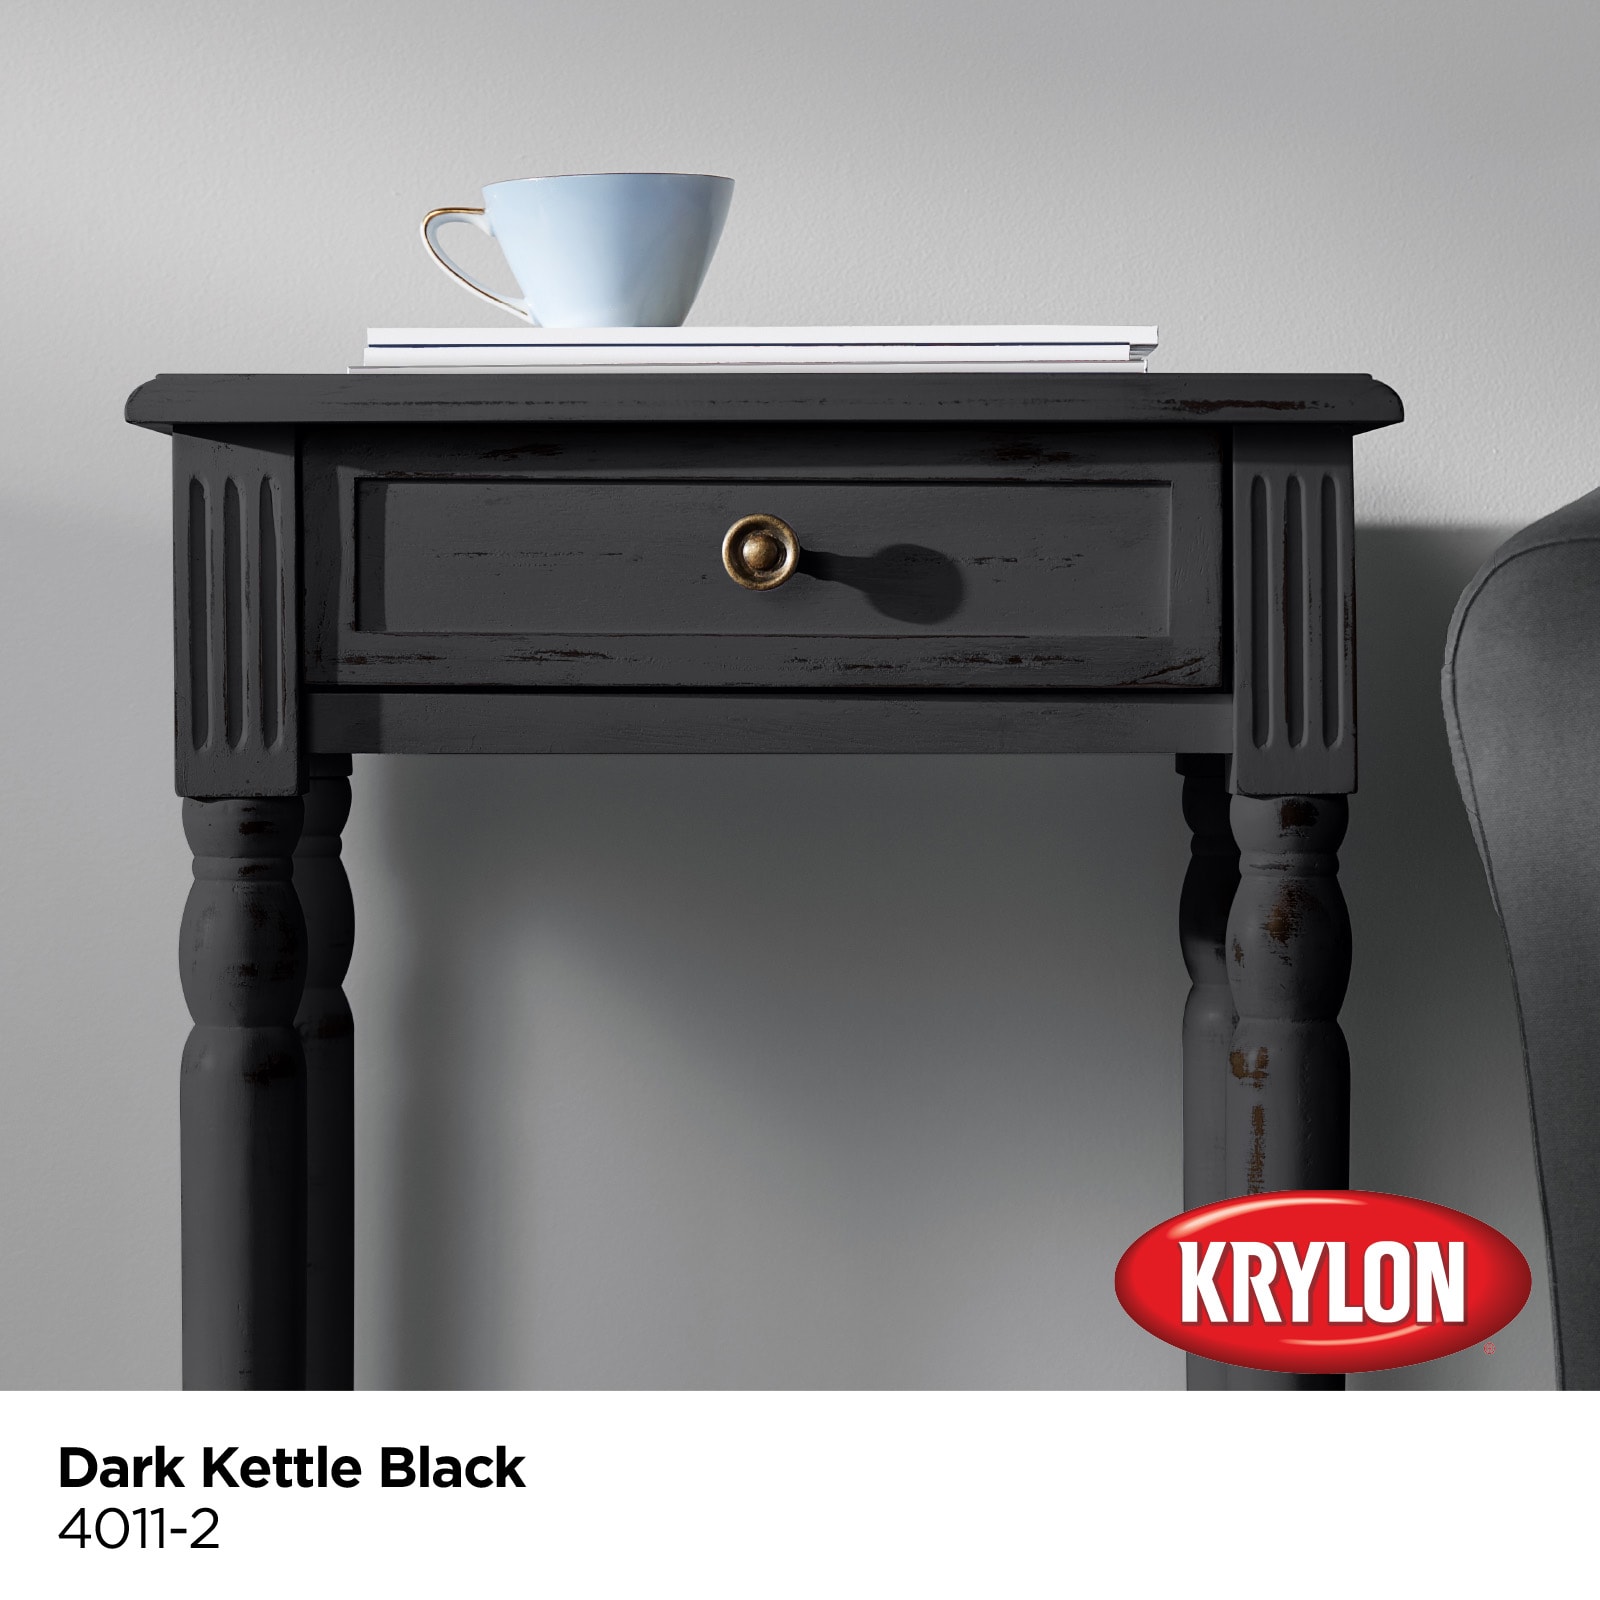 Krylon Dark Kettle Black 4011-2 Water-based Chalky Paint (1-Quart